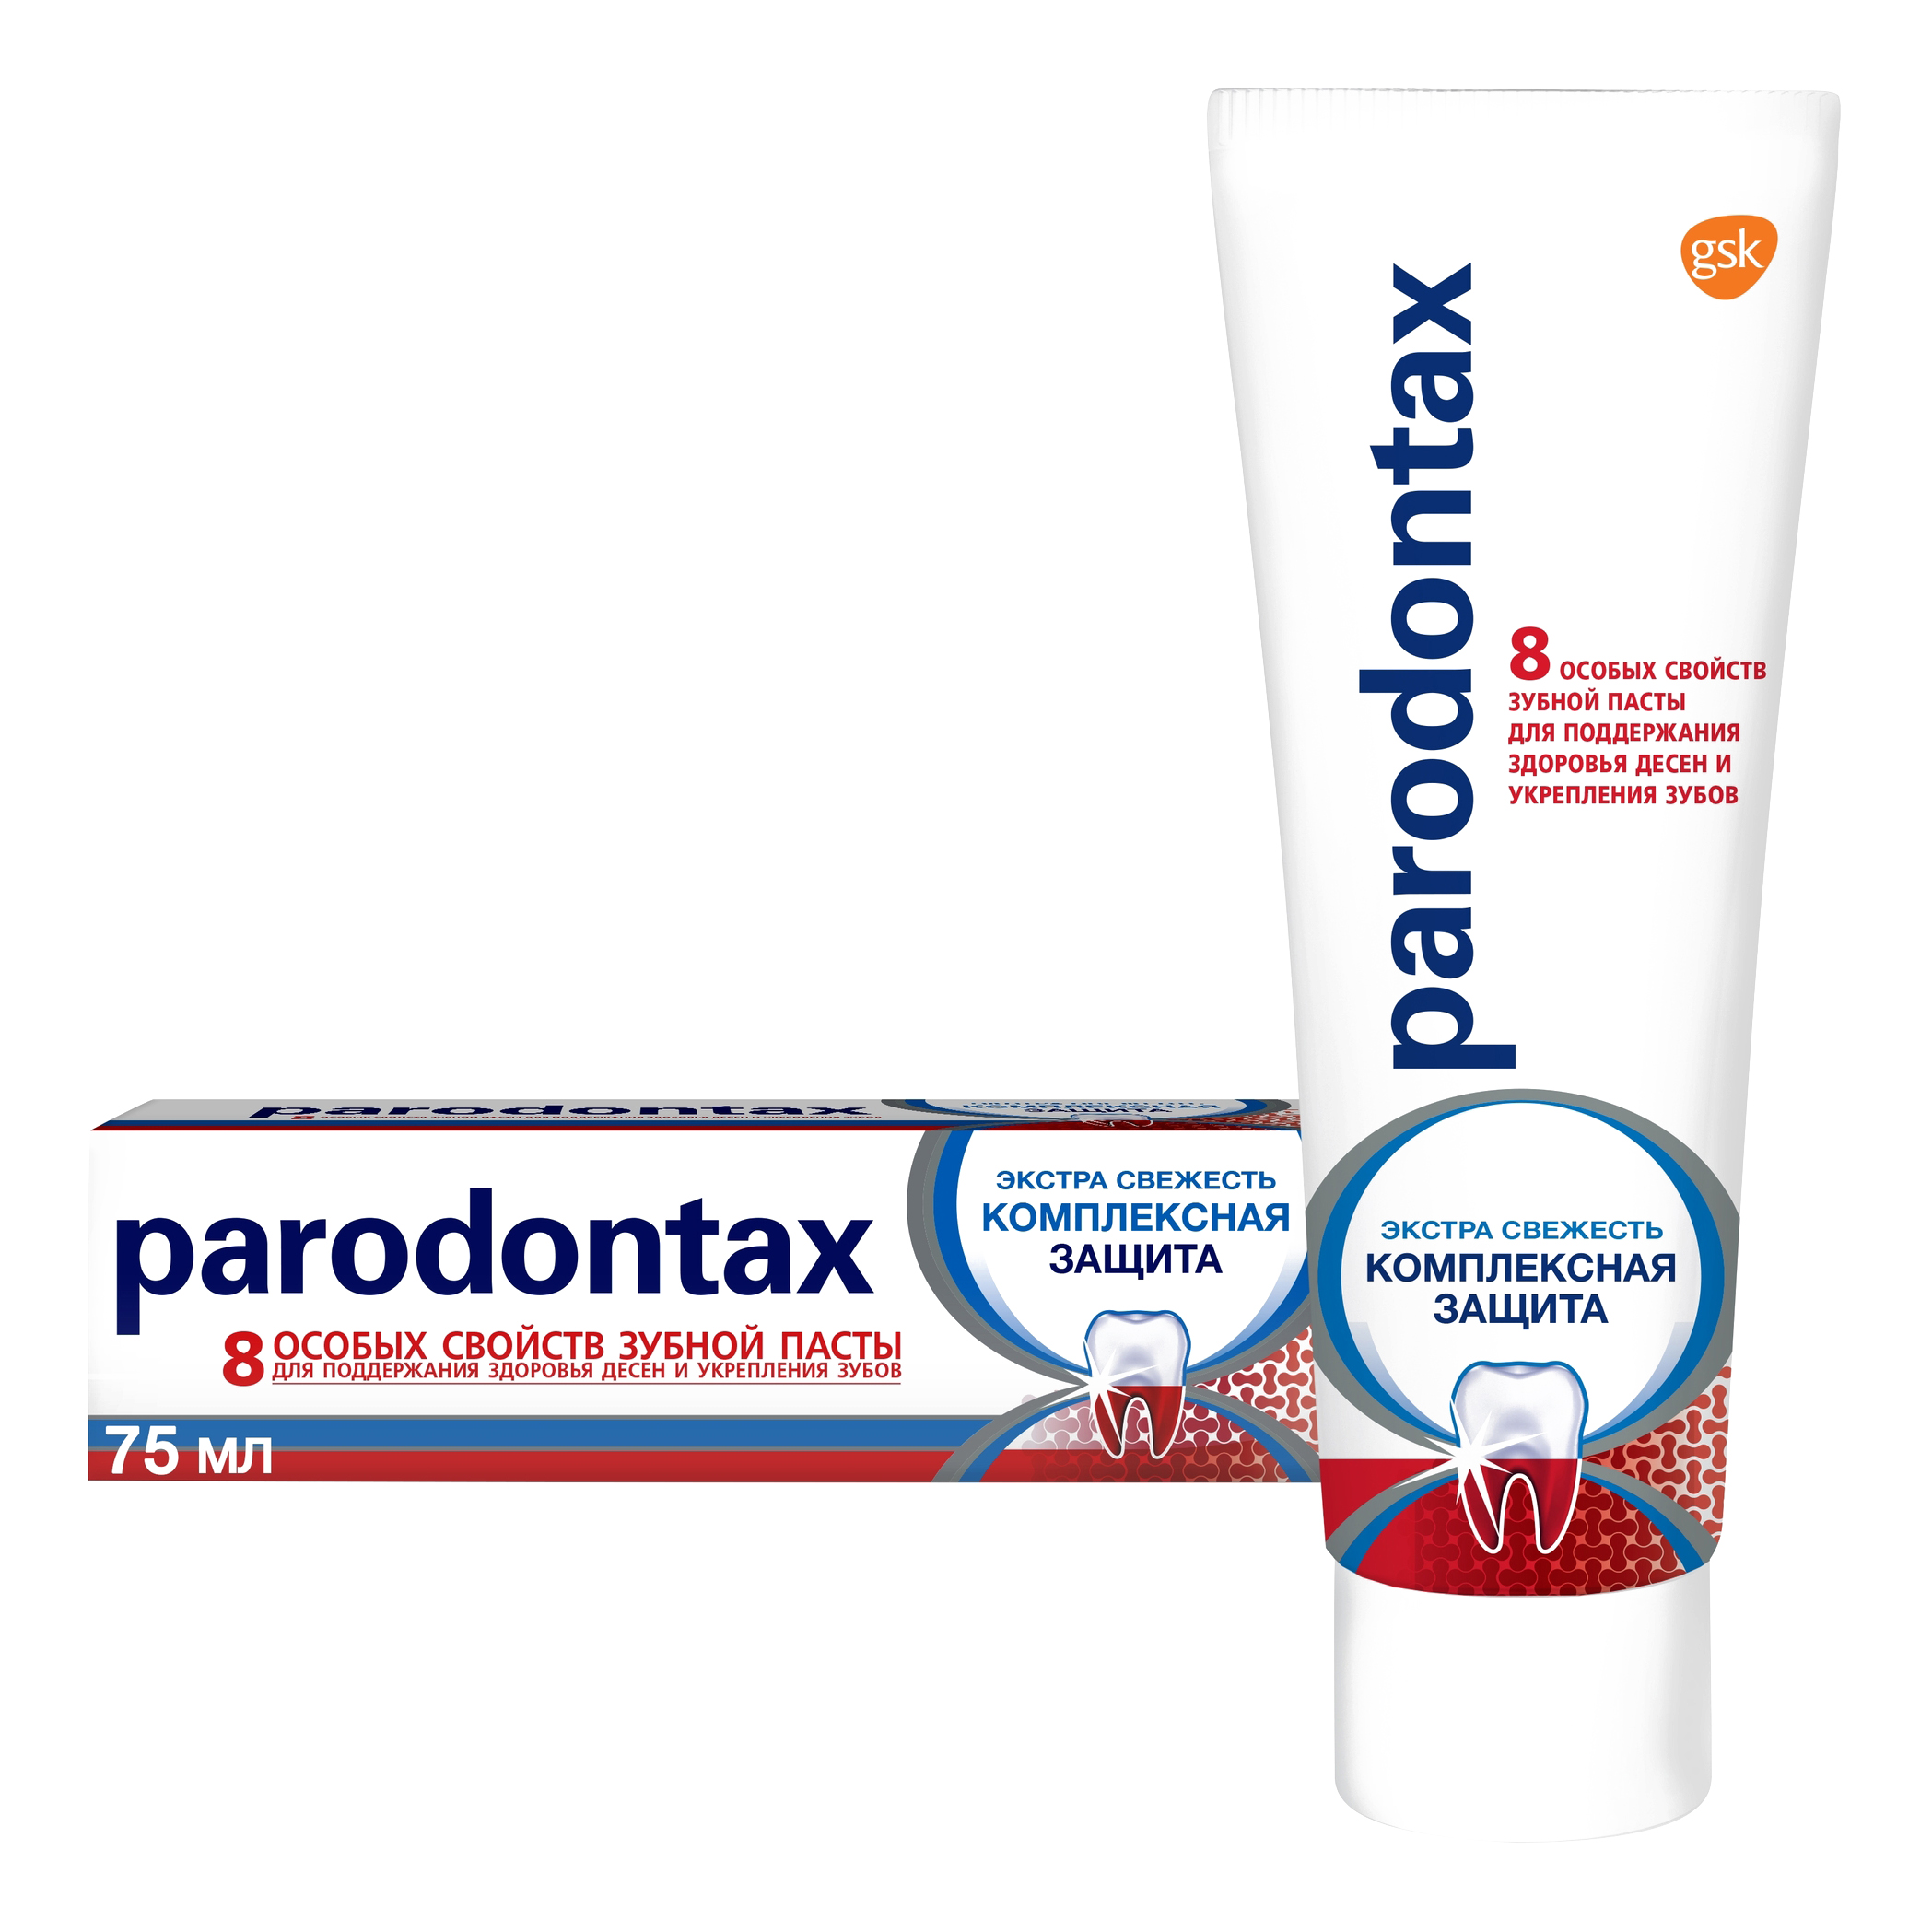 Зубная паста parodontax Комплексная Защита от воспаления и кровоточивости десен с фтором, 75 мл киевская русь